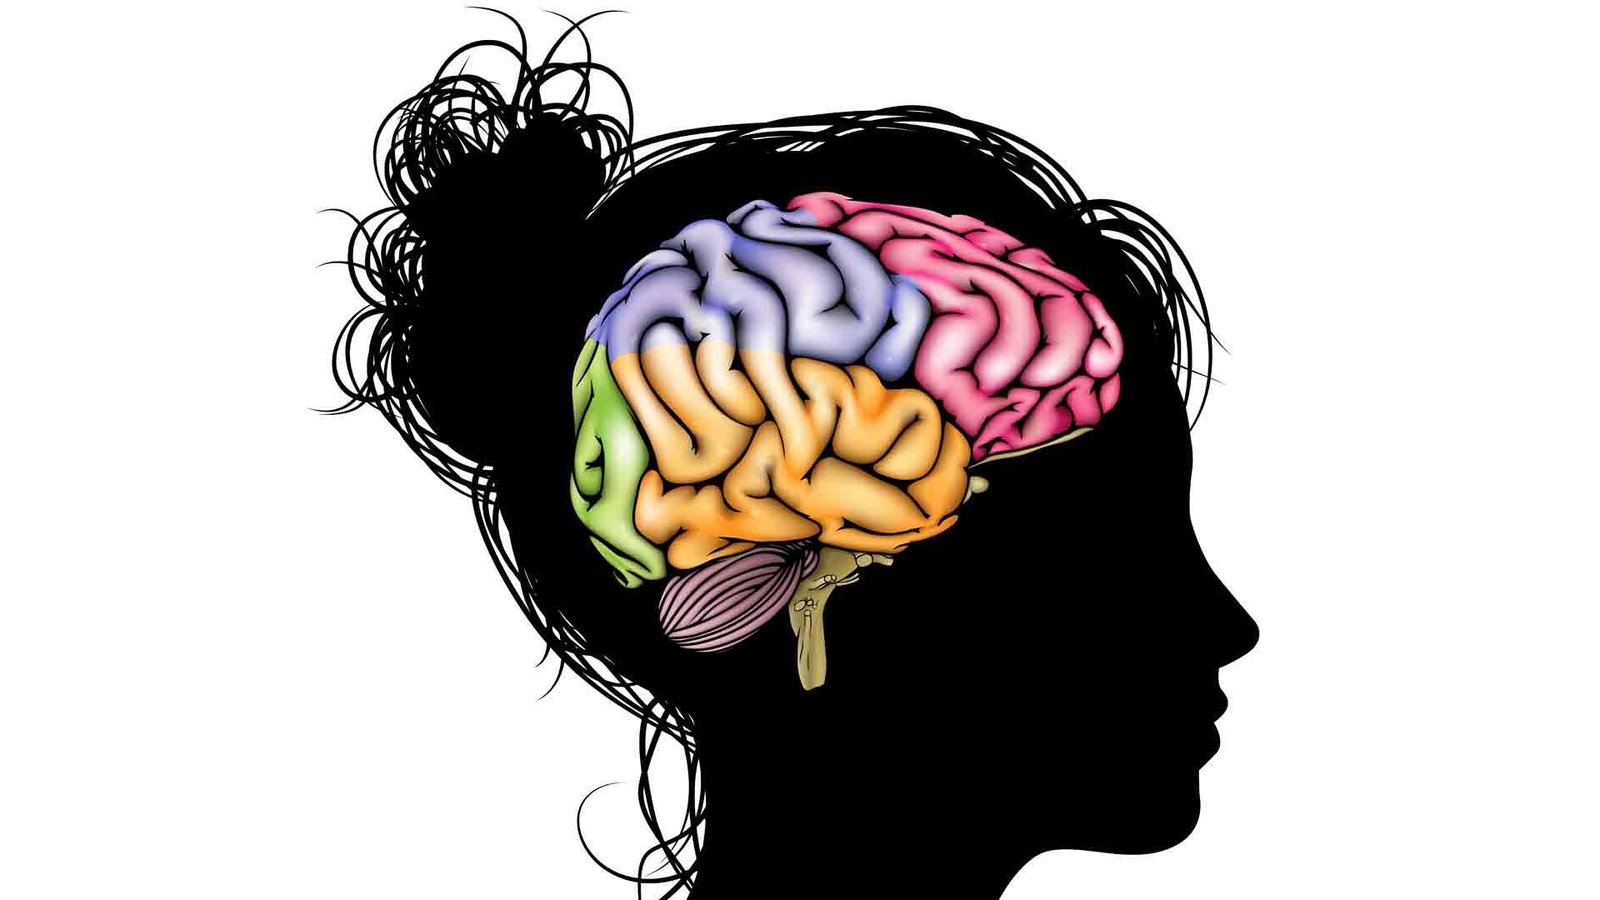 O incrível potencial de aprendizado do cérebro adolescente